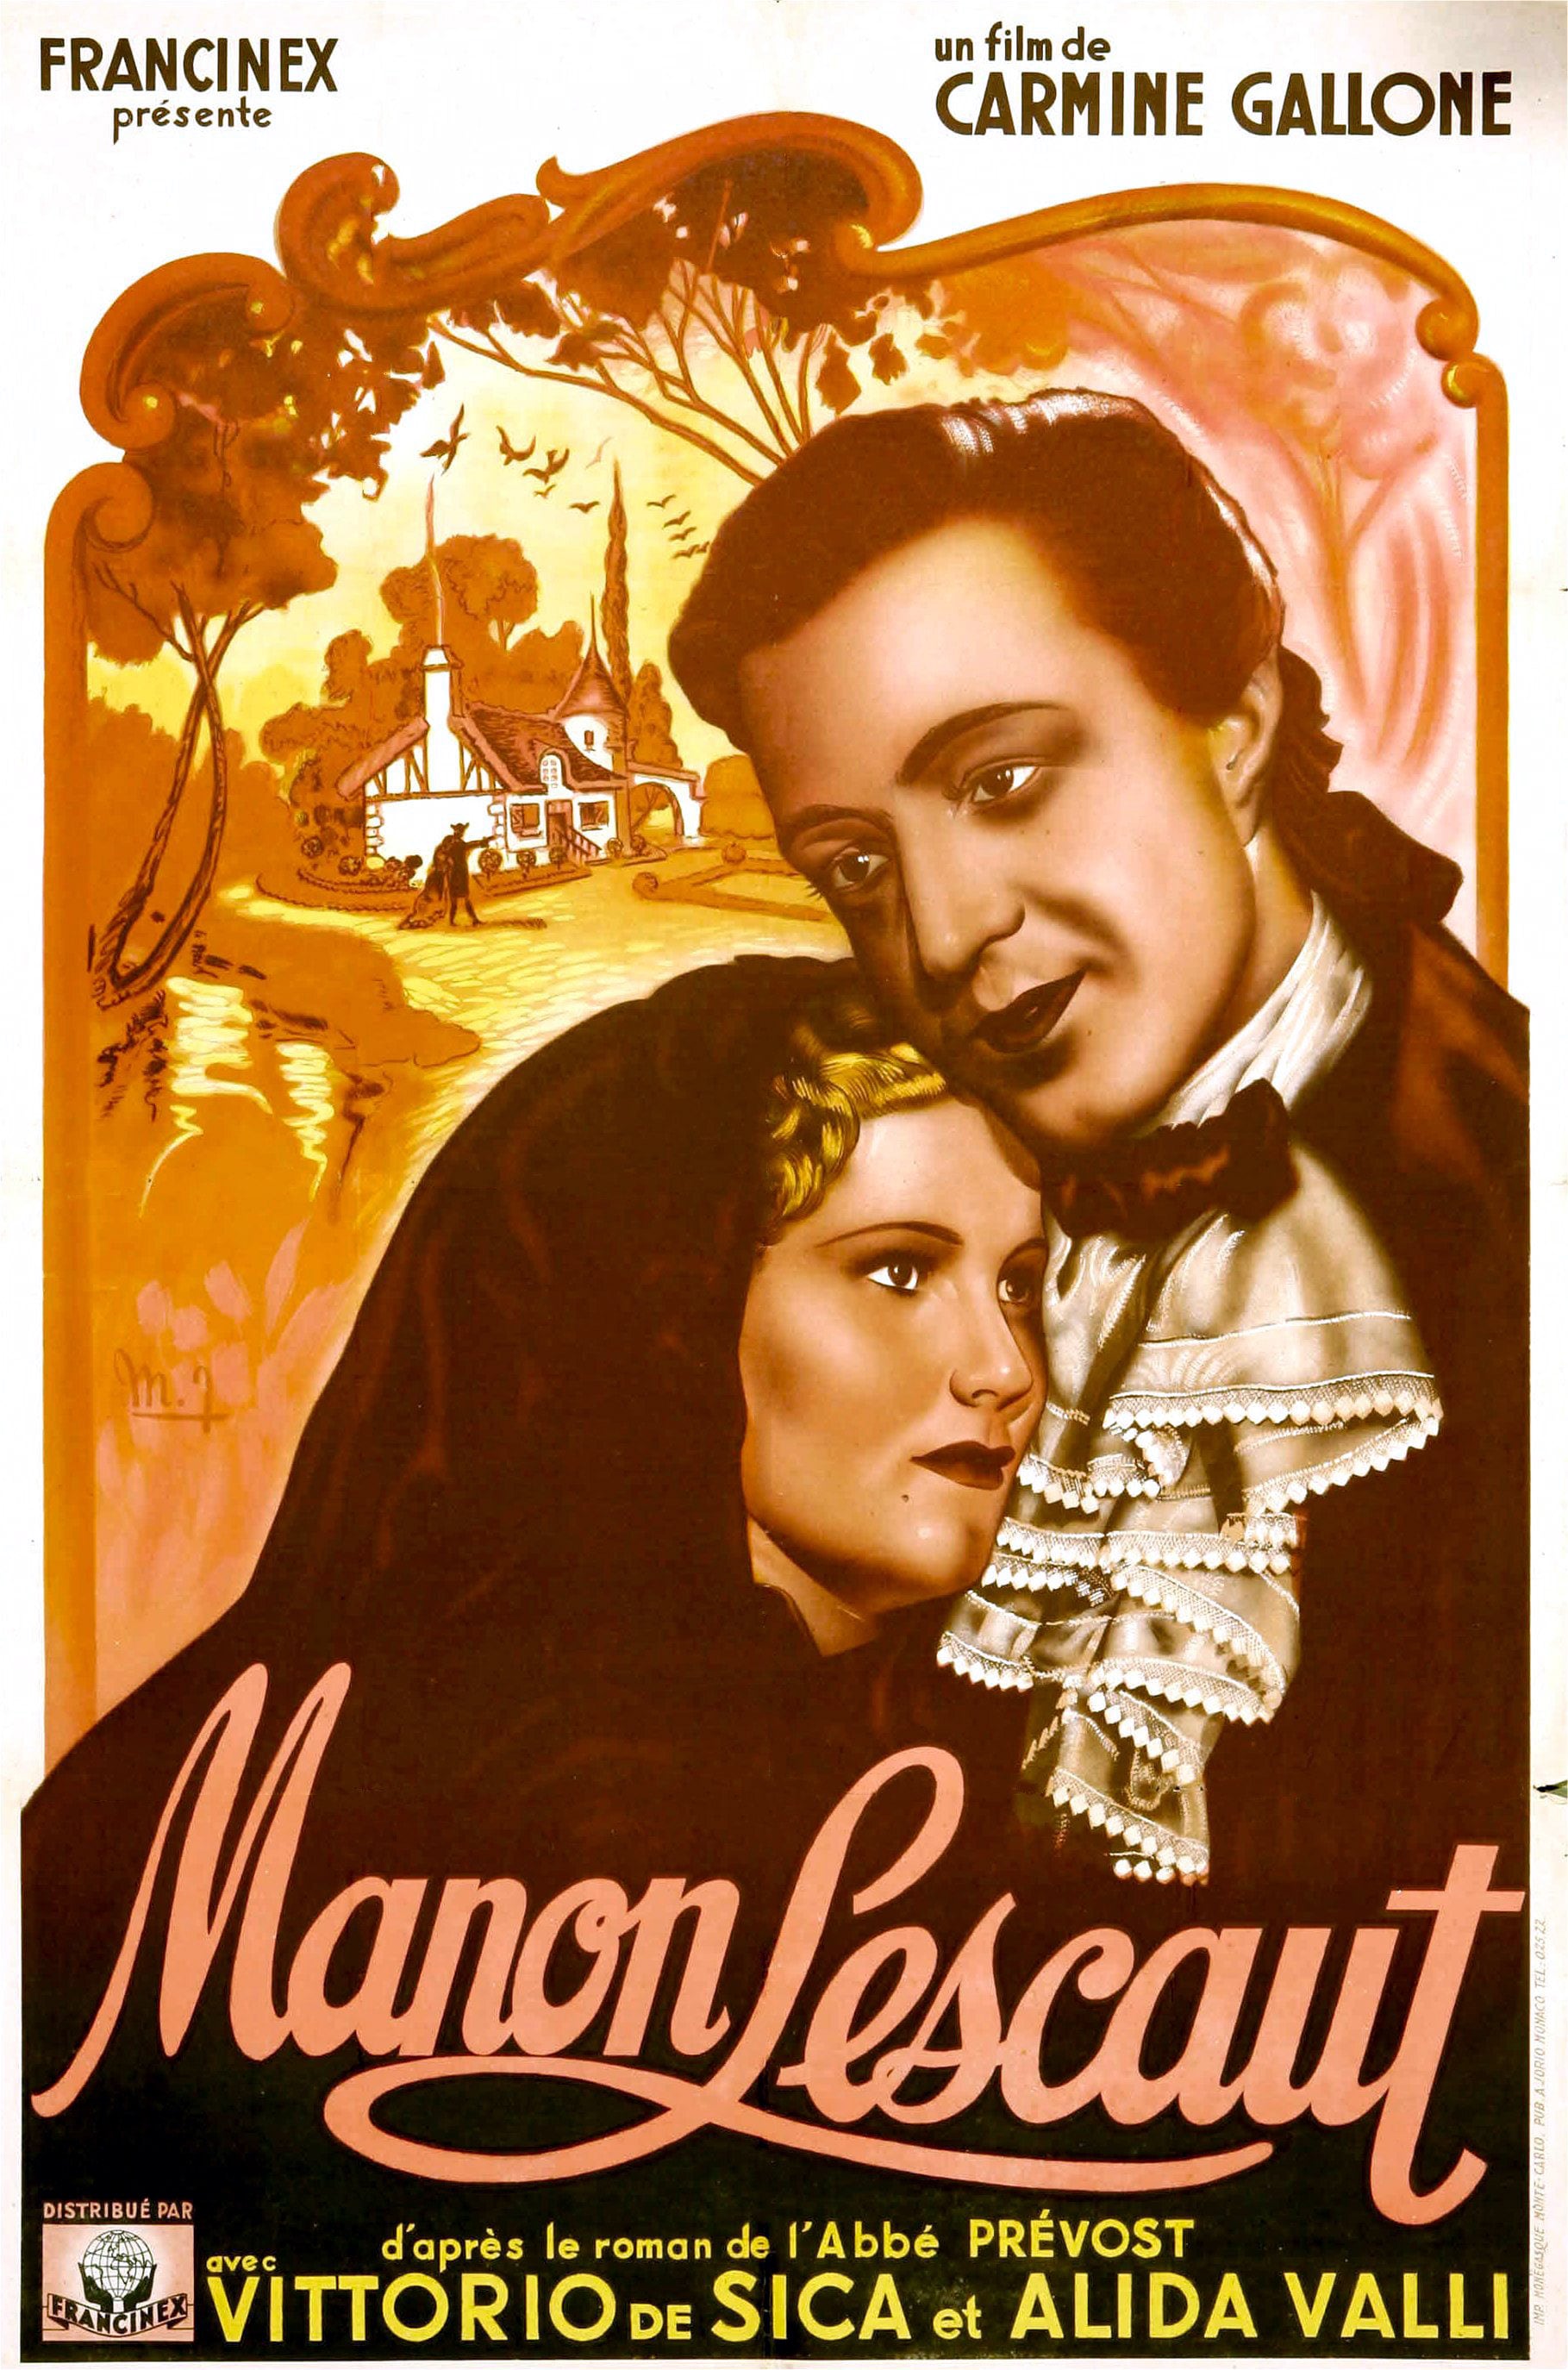 La locandina del film "Manon Lescaut", 1940. Interpretato con Vittorio De Sica